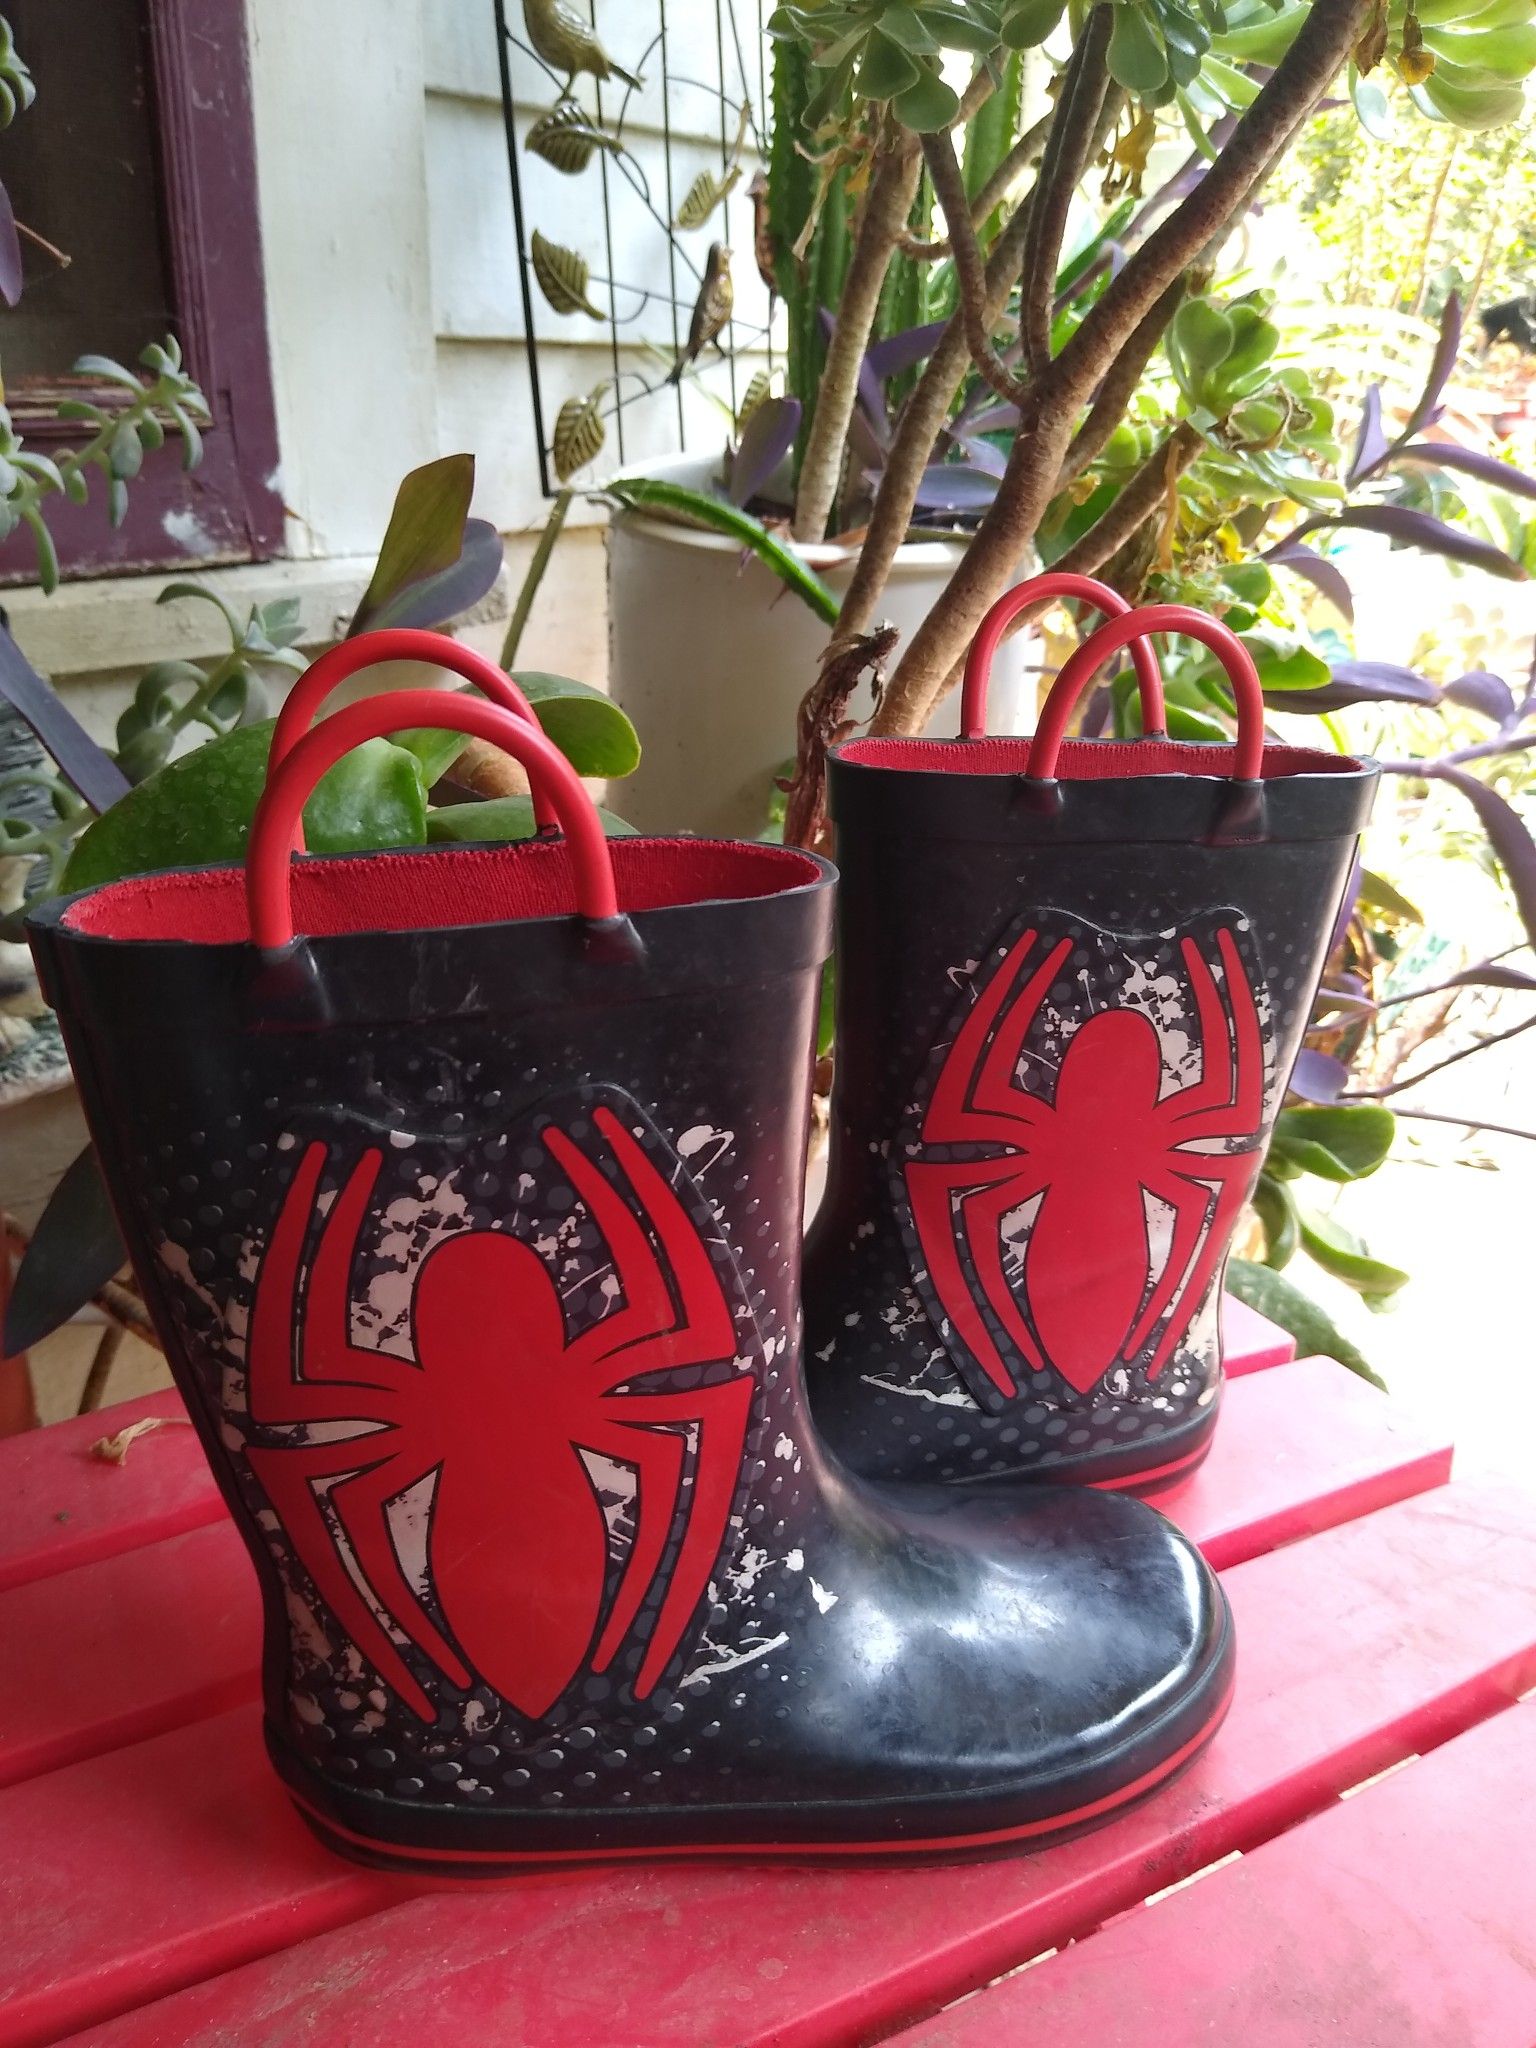 Spider rain boots kids sz 11